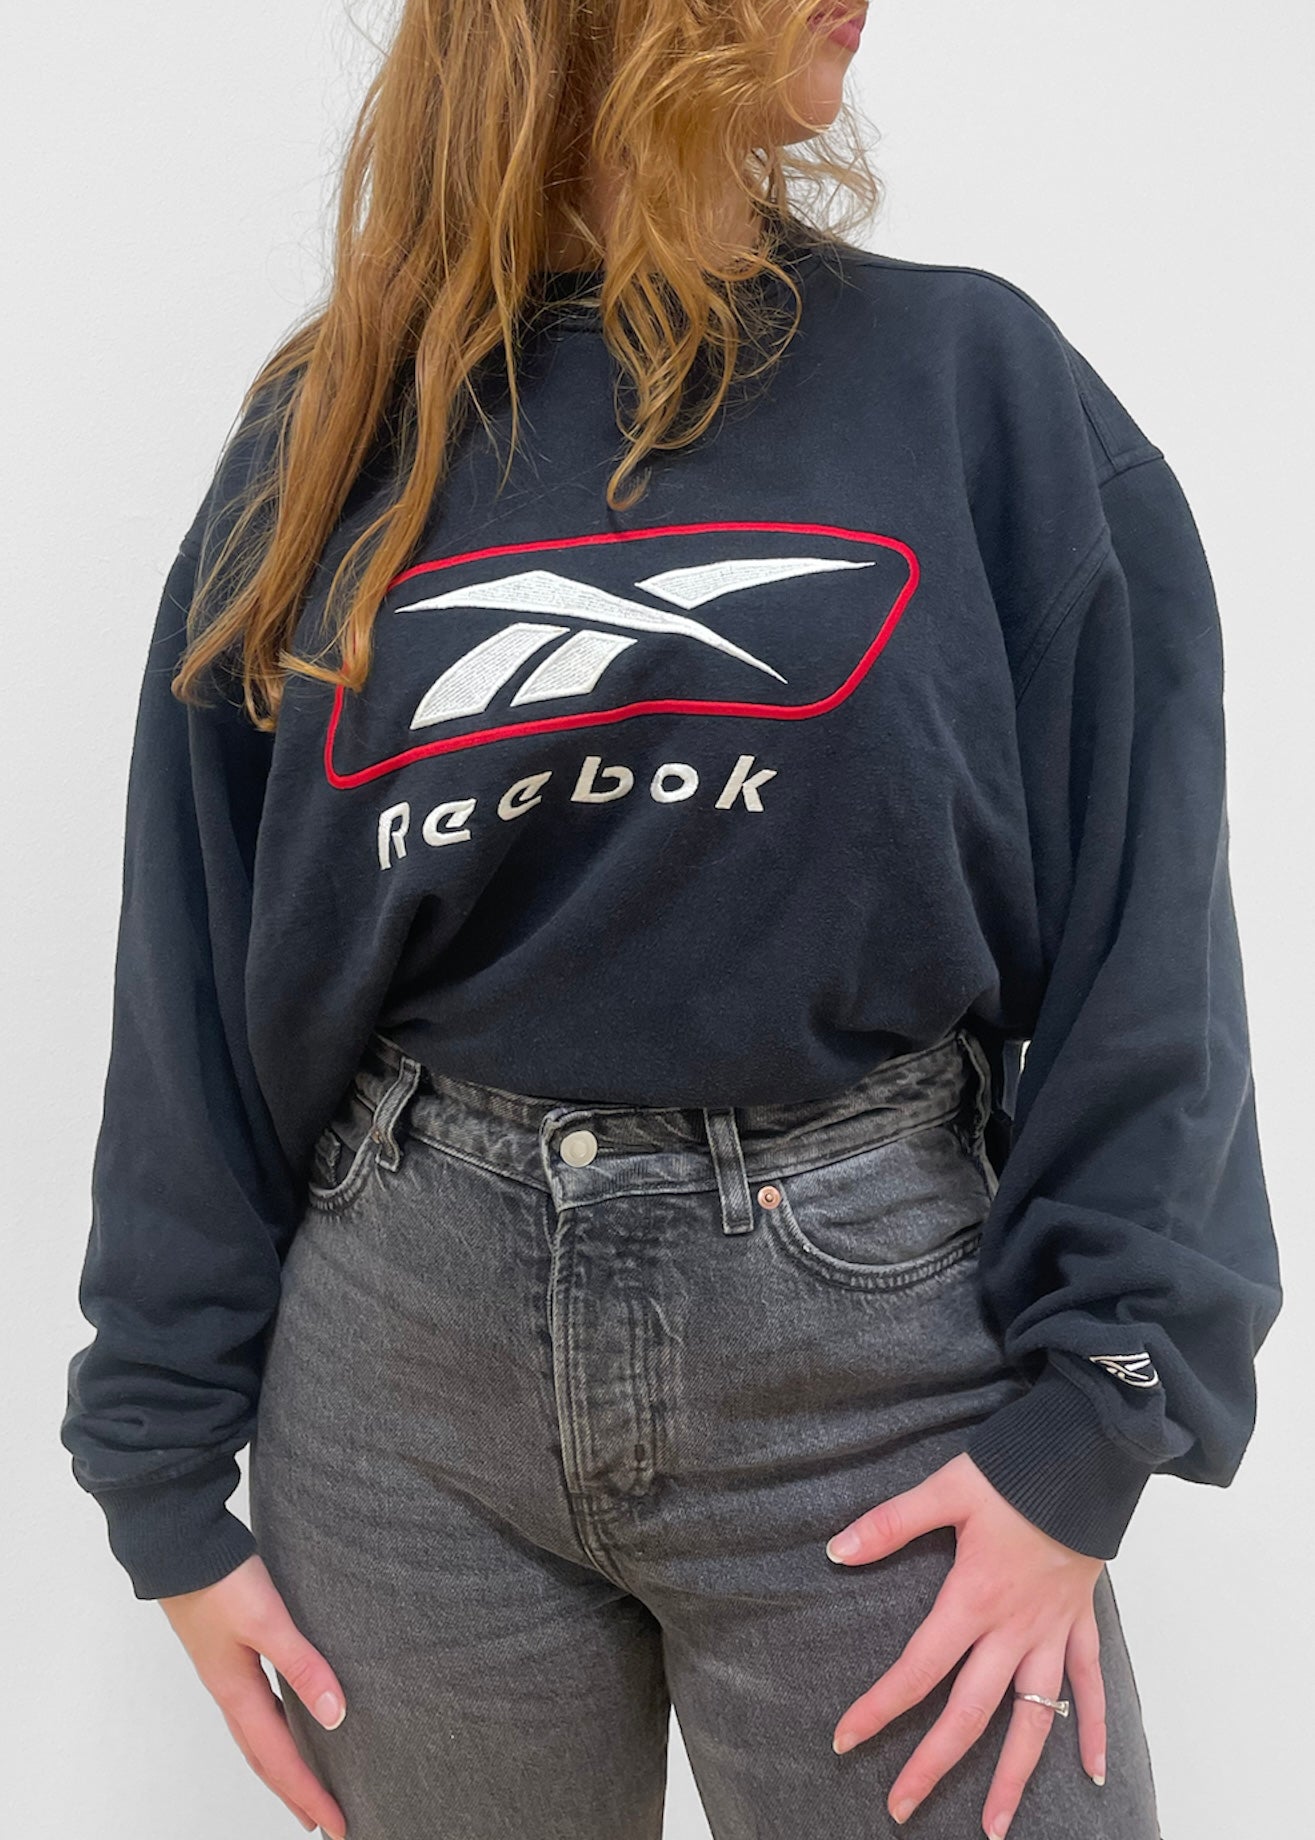 For det andet Færøerne via Vintage Reebok Sweater XL – Thrift On Store